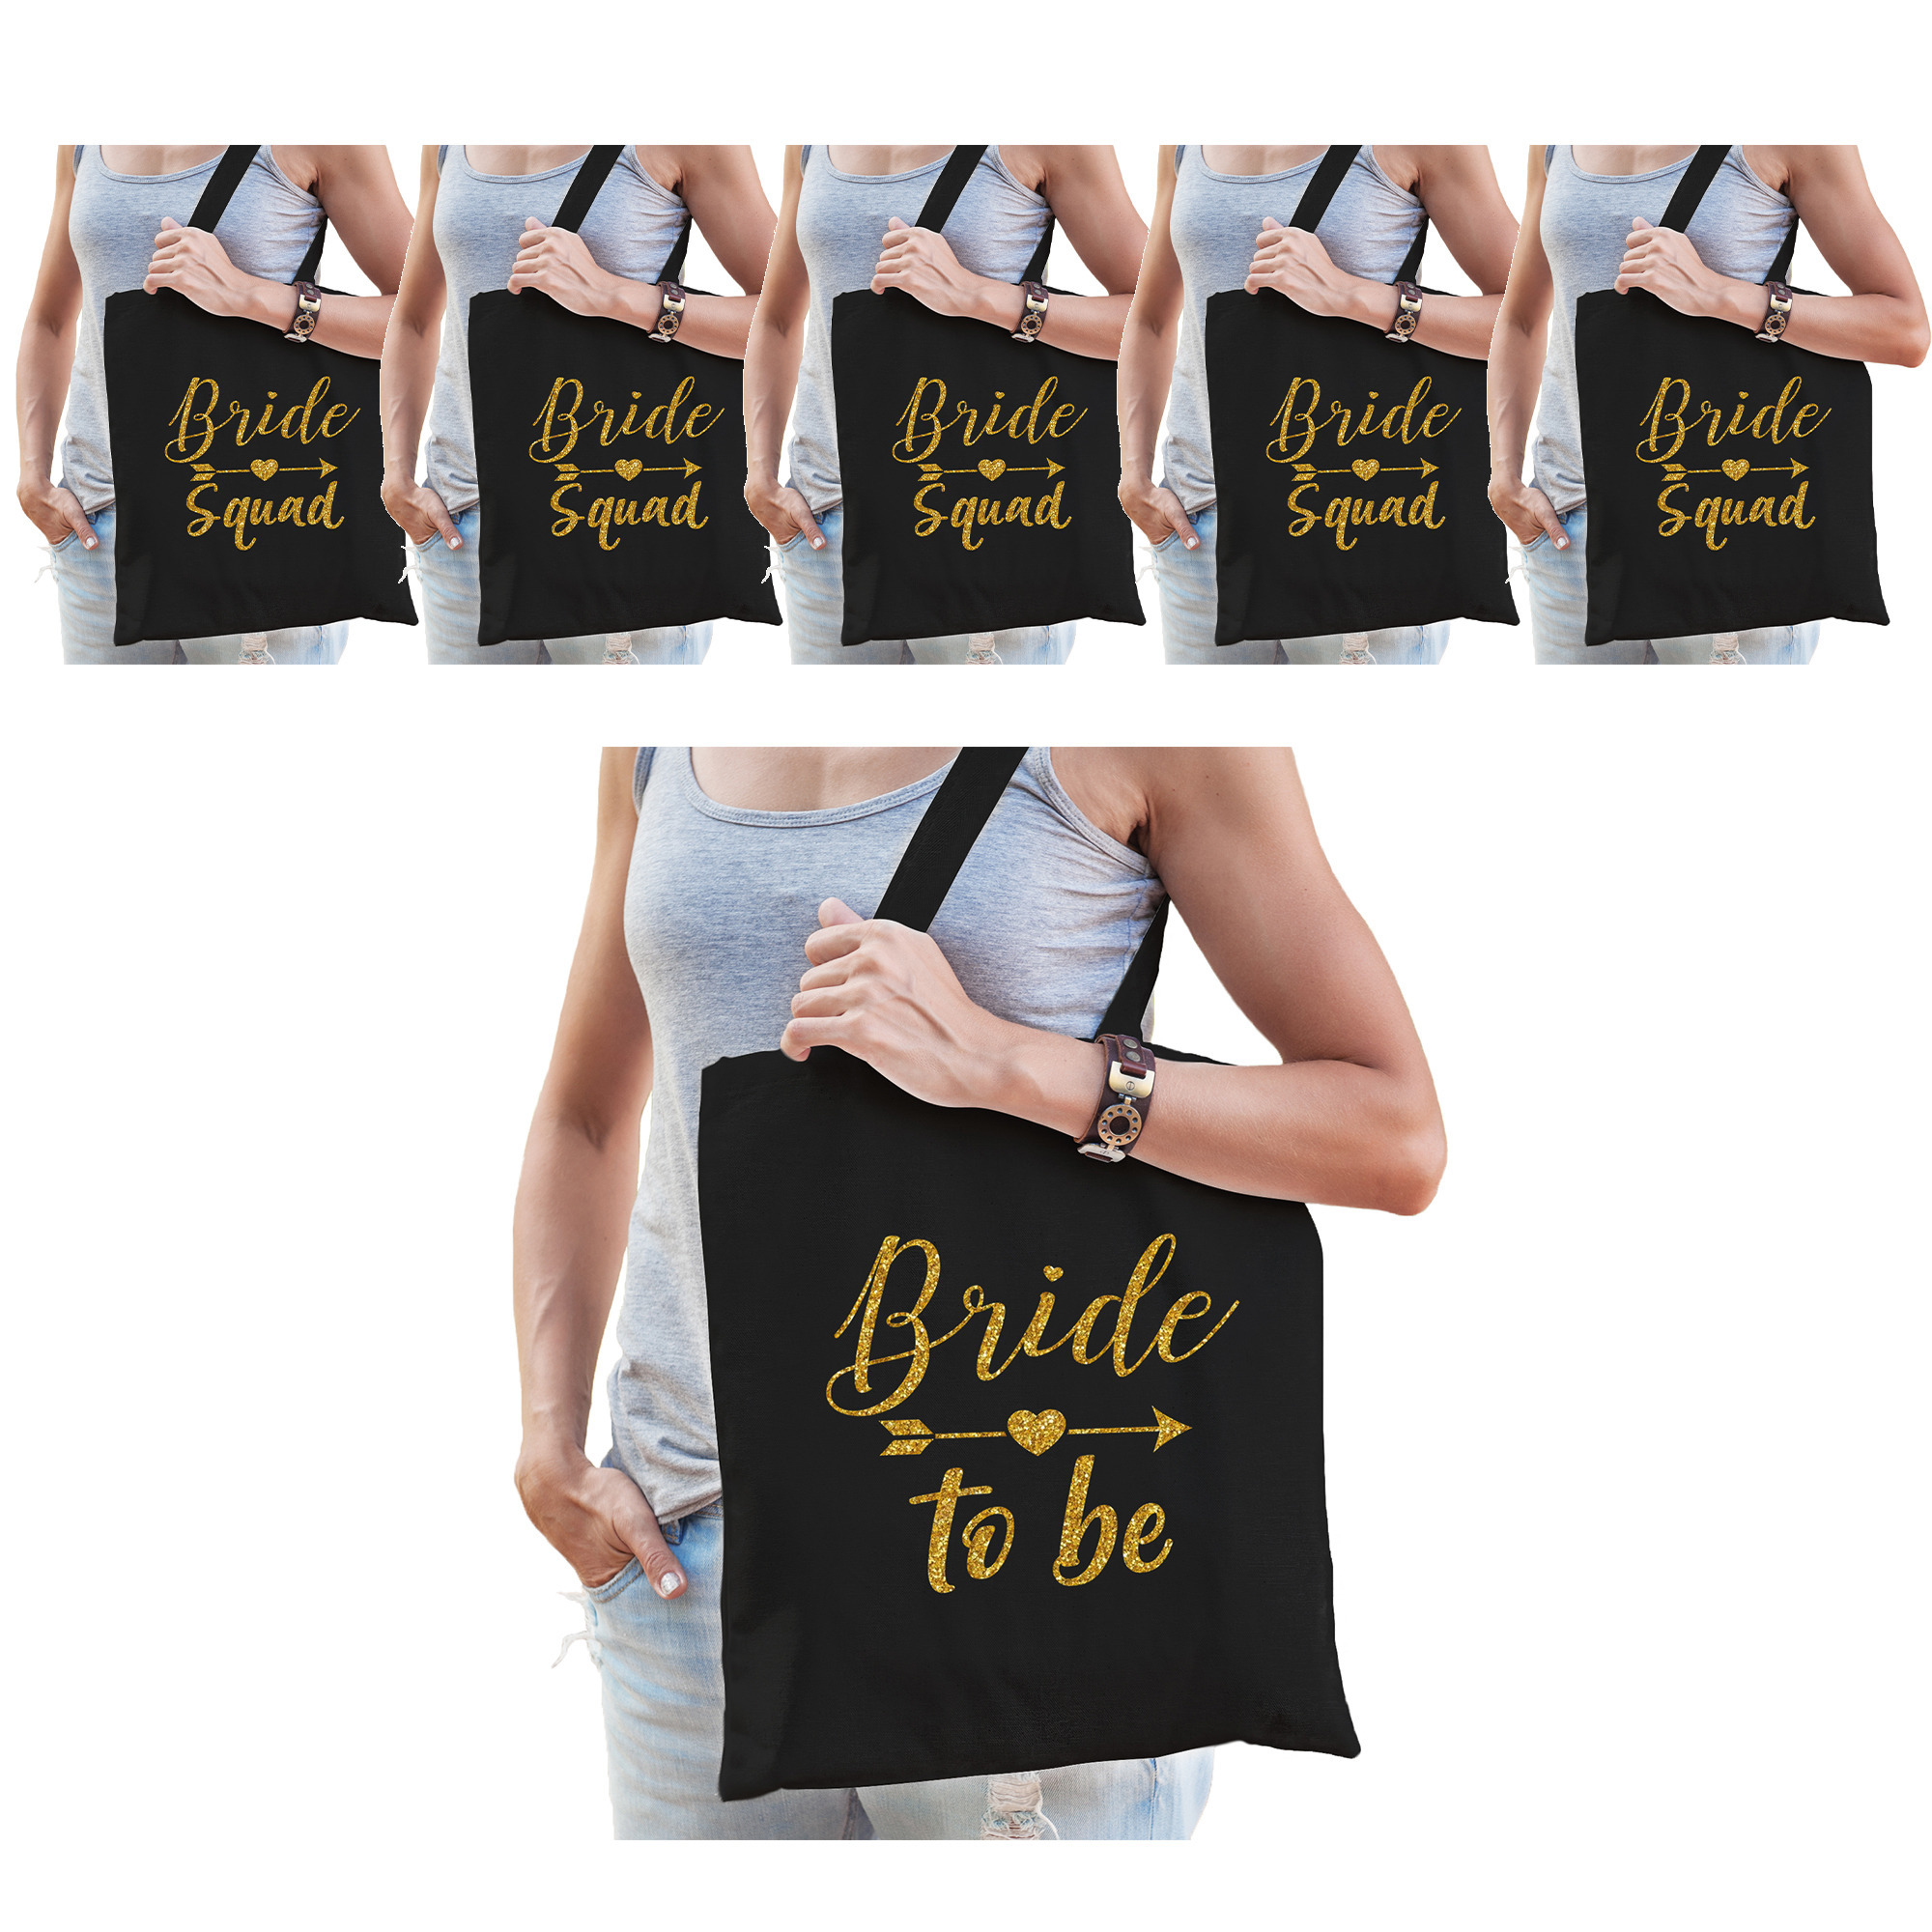 Vrijgezellenfeest dames tasjes- goodiebag pakket: 1x Bride to Be zwart goud+ 5x Bride Squad zwart go